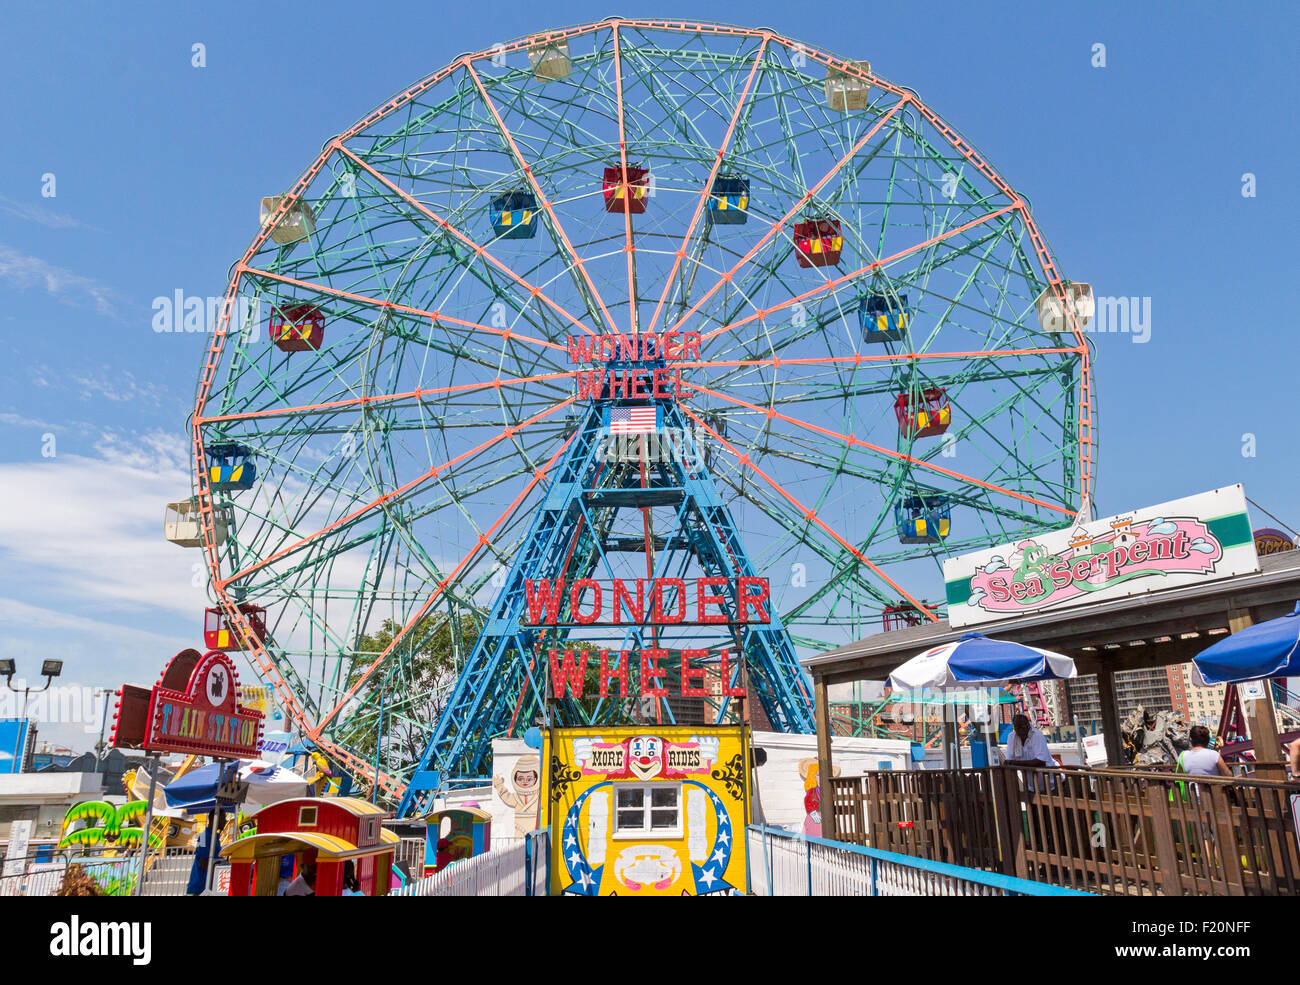 Leute, die Spaß auf Coney Island, Brooklyn, New York. Stockfoto